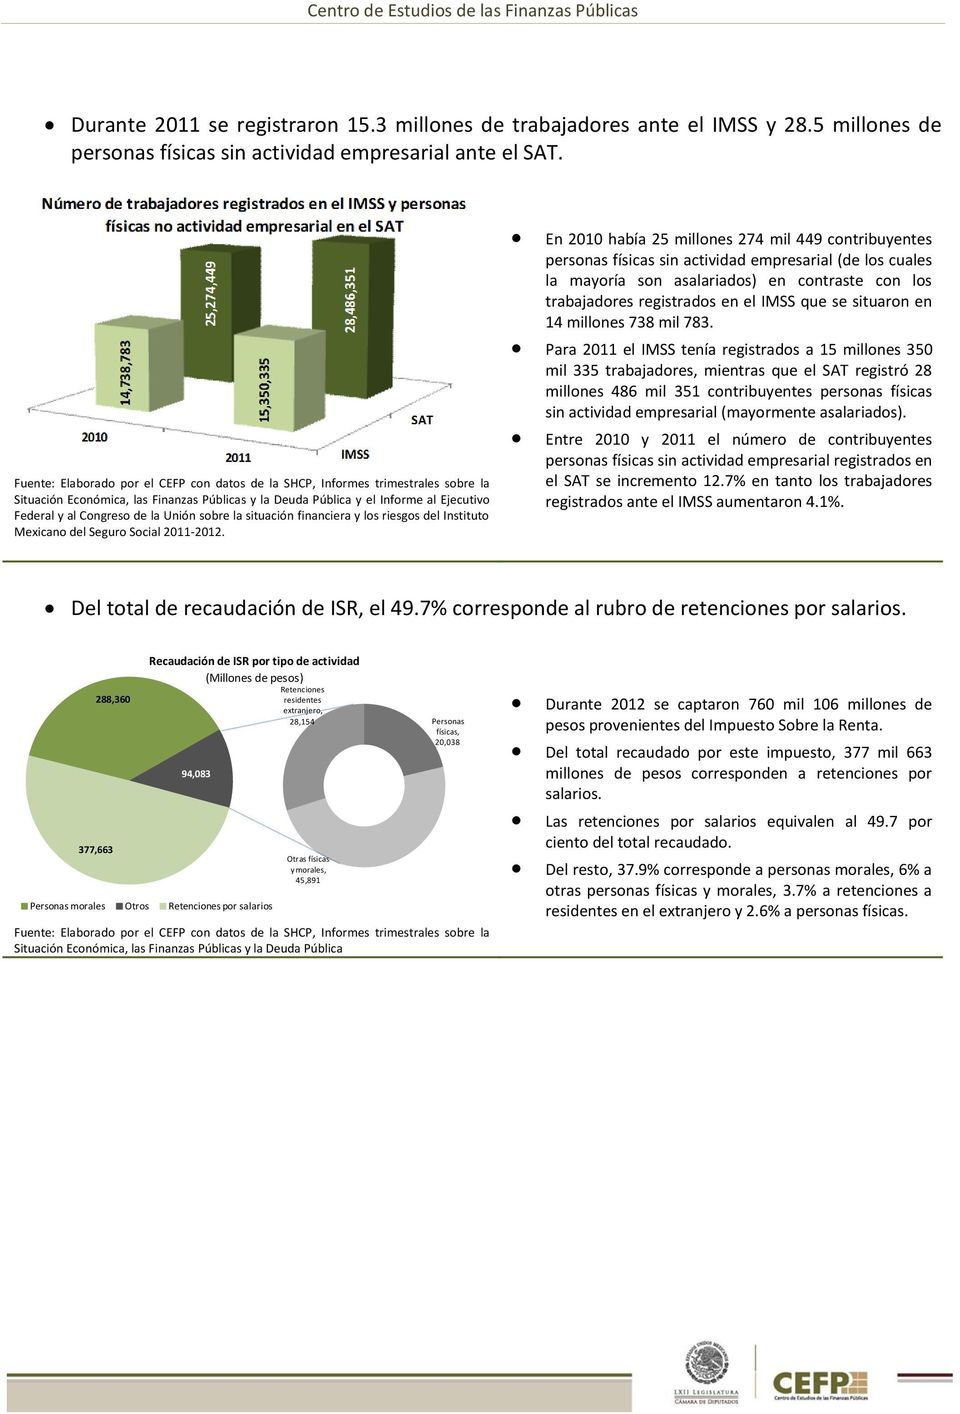 Unión sobre la situación financiera y los riesgos del Instituto Mexicano del Seguro Social 2011-2012.